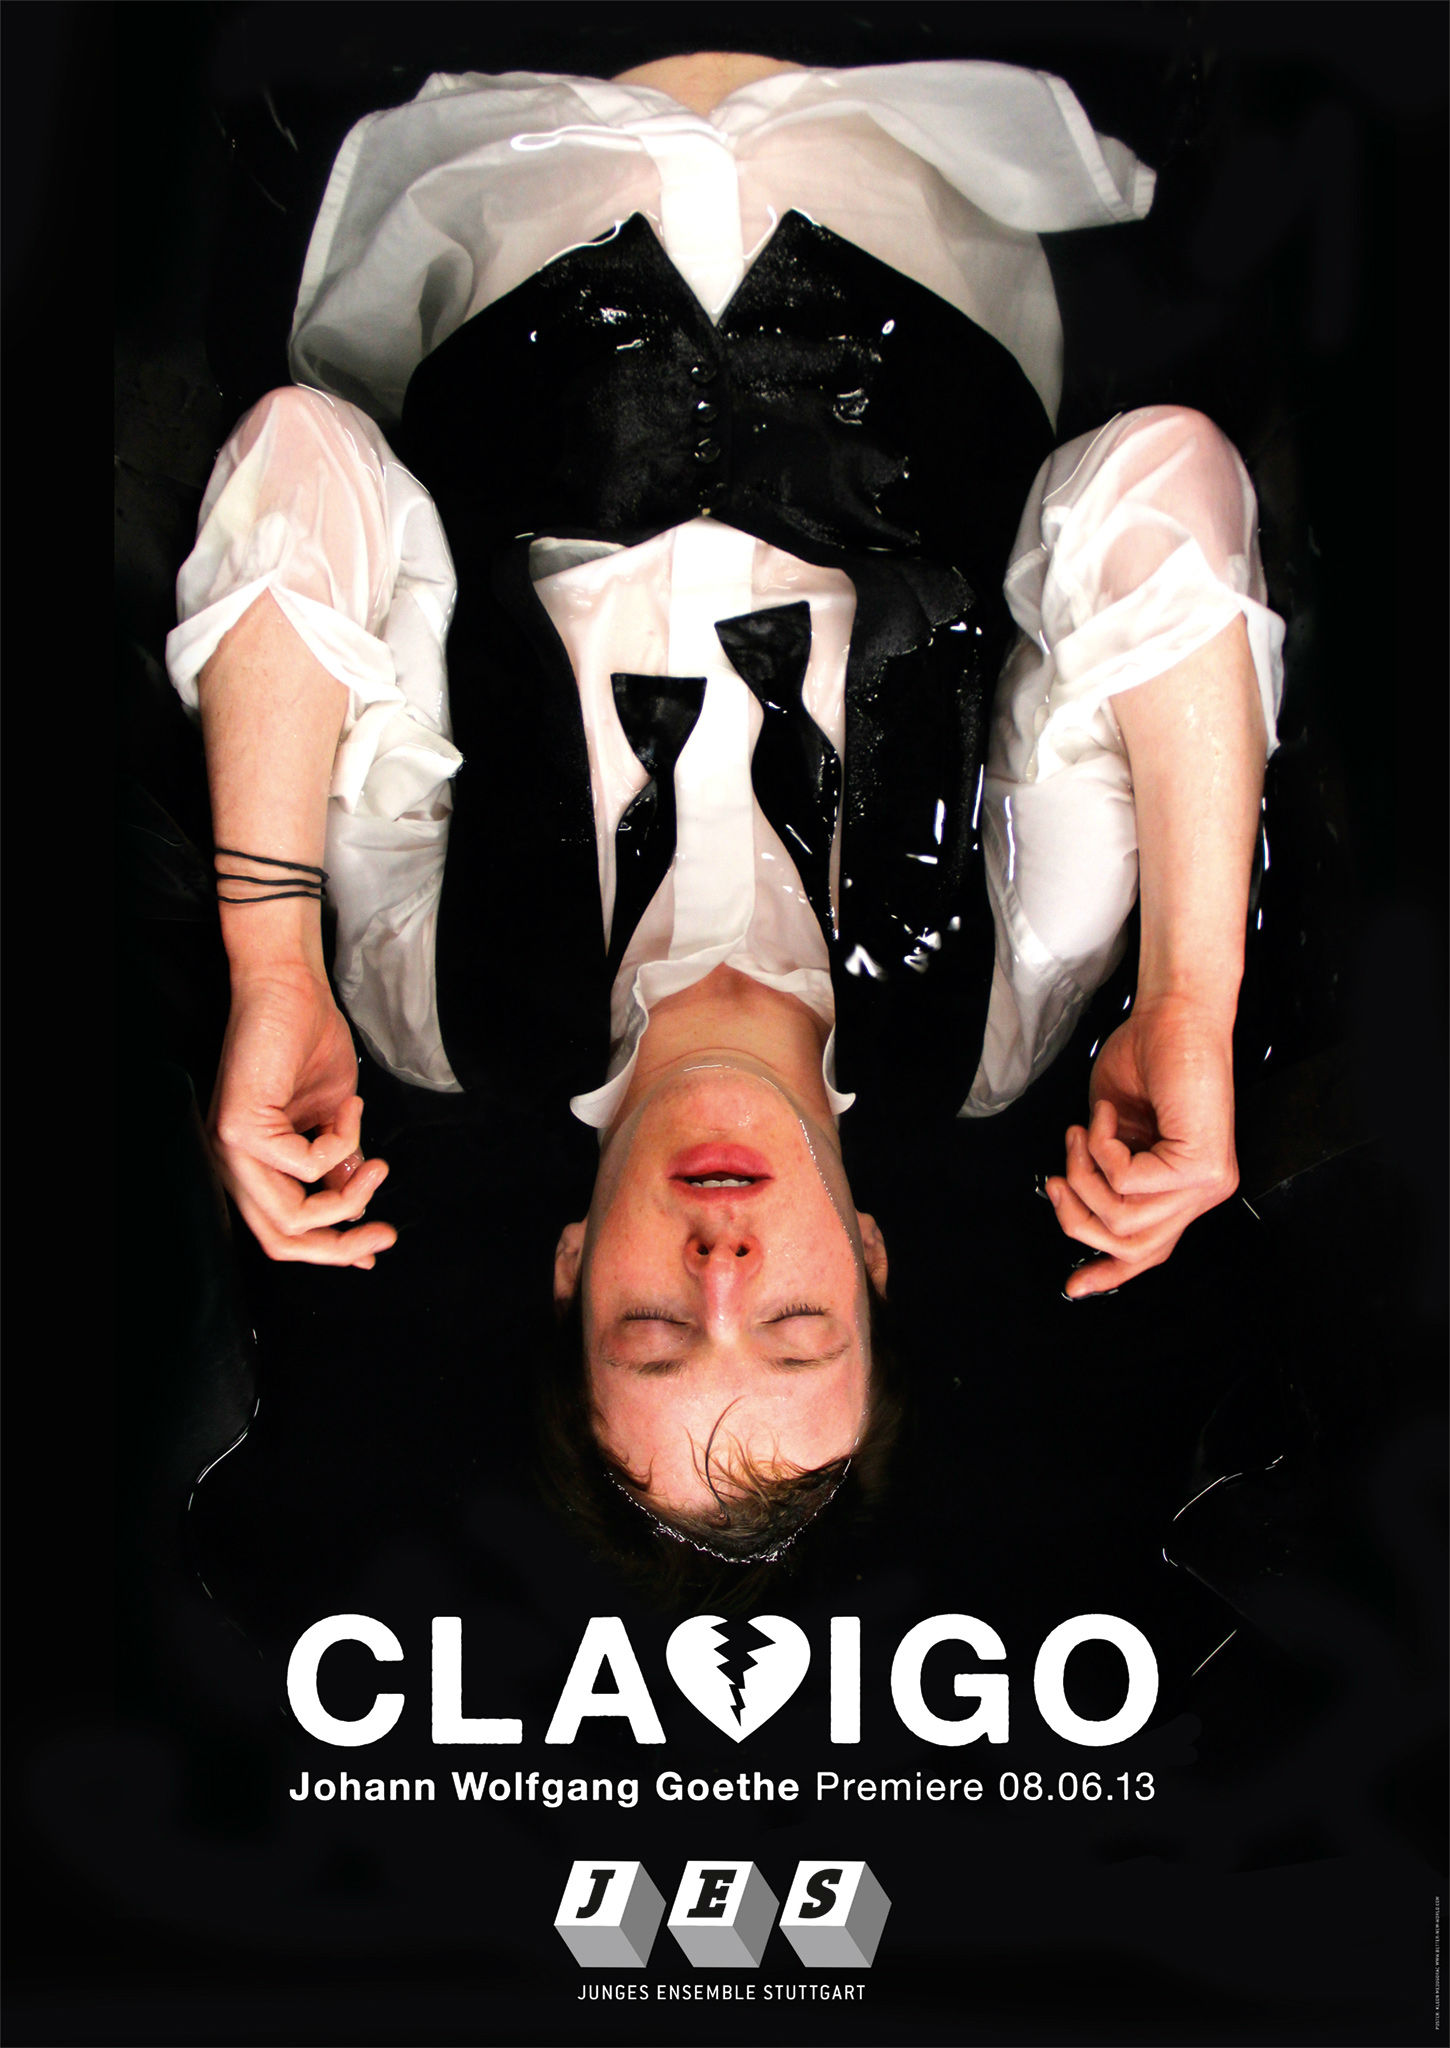 Kleon Medugorac Clavigo Poster for JES Stuttgart.